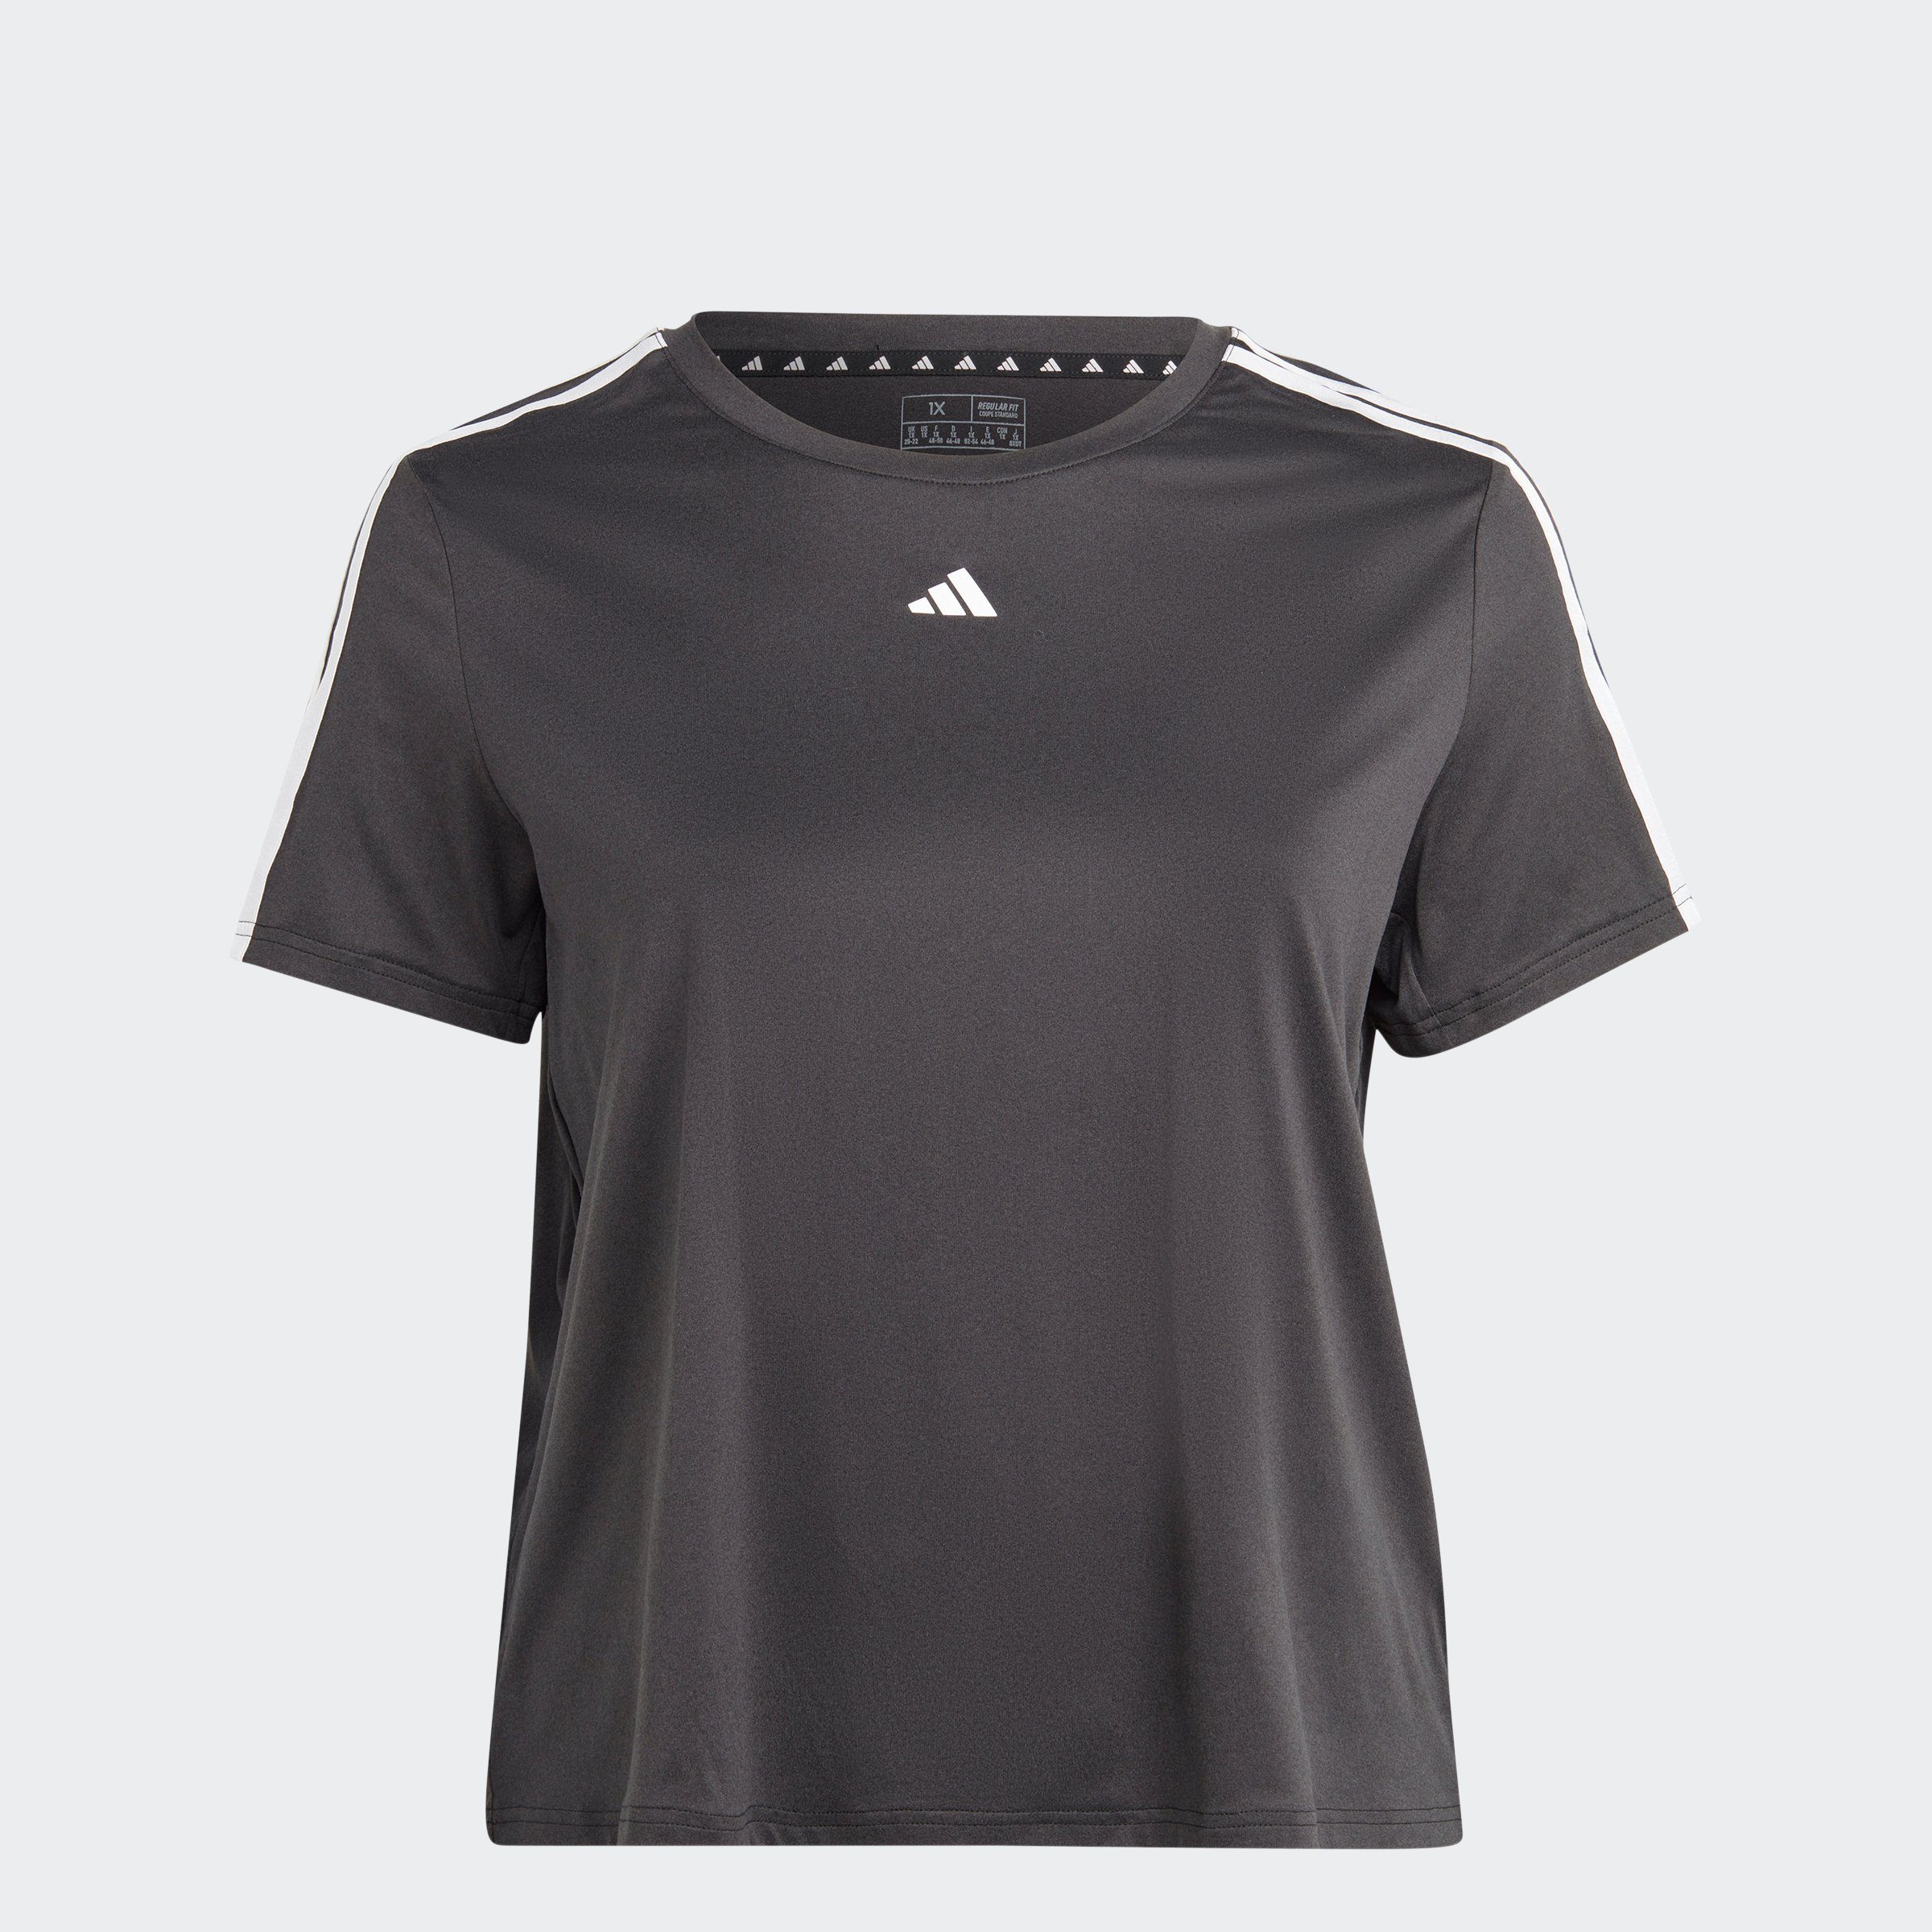 AEROREADY T-Shirt Performance ESSENTIALS – 3-STREIFEN White Black adidas / TRAIN GROSSE GRÖSSEN